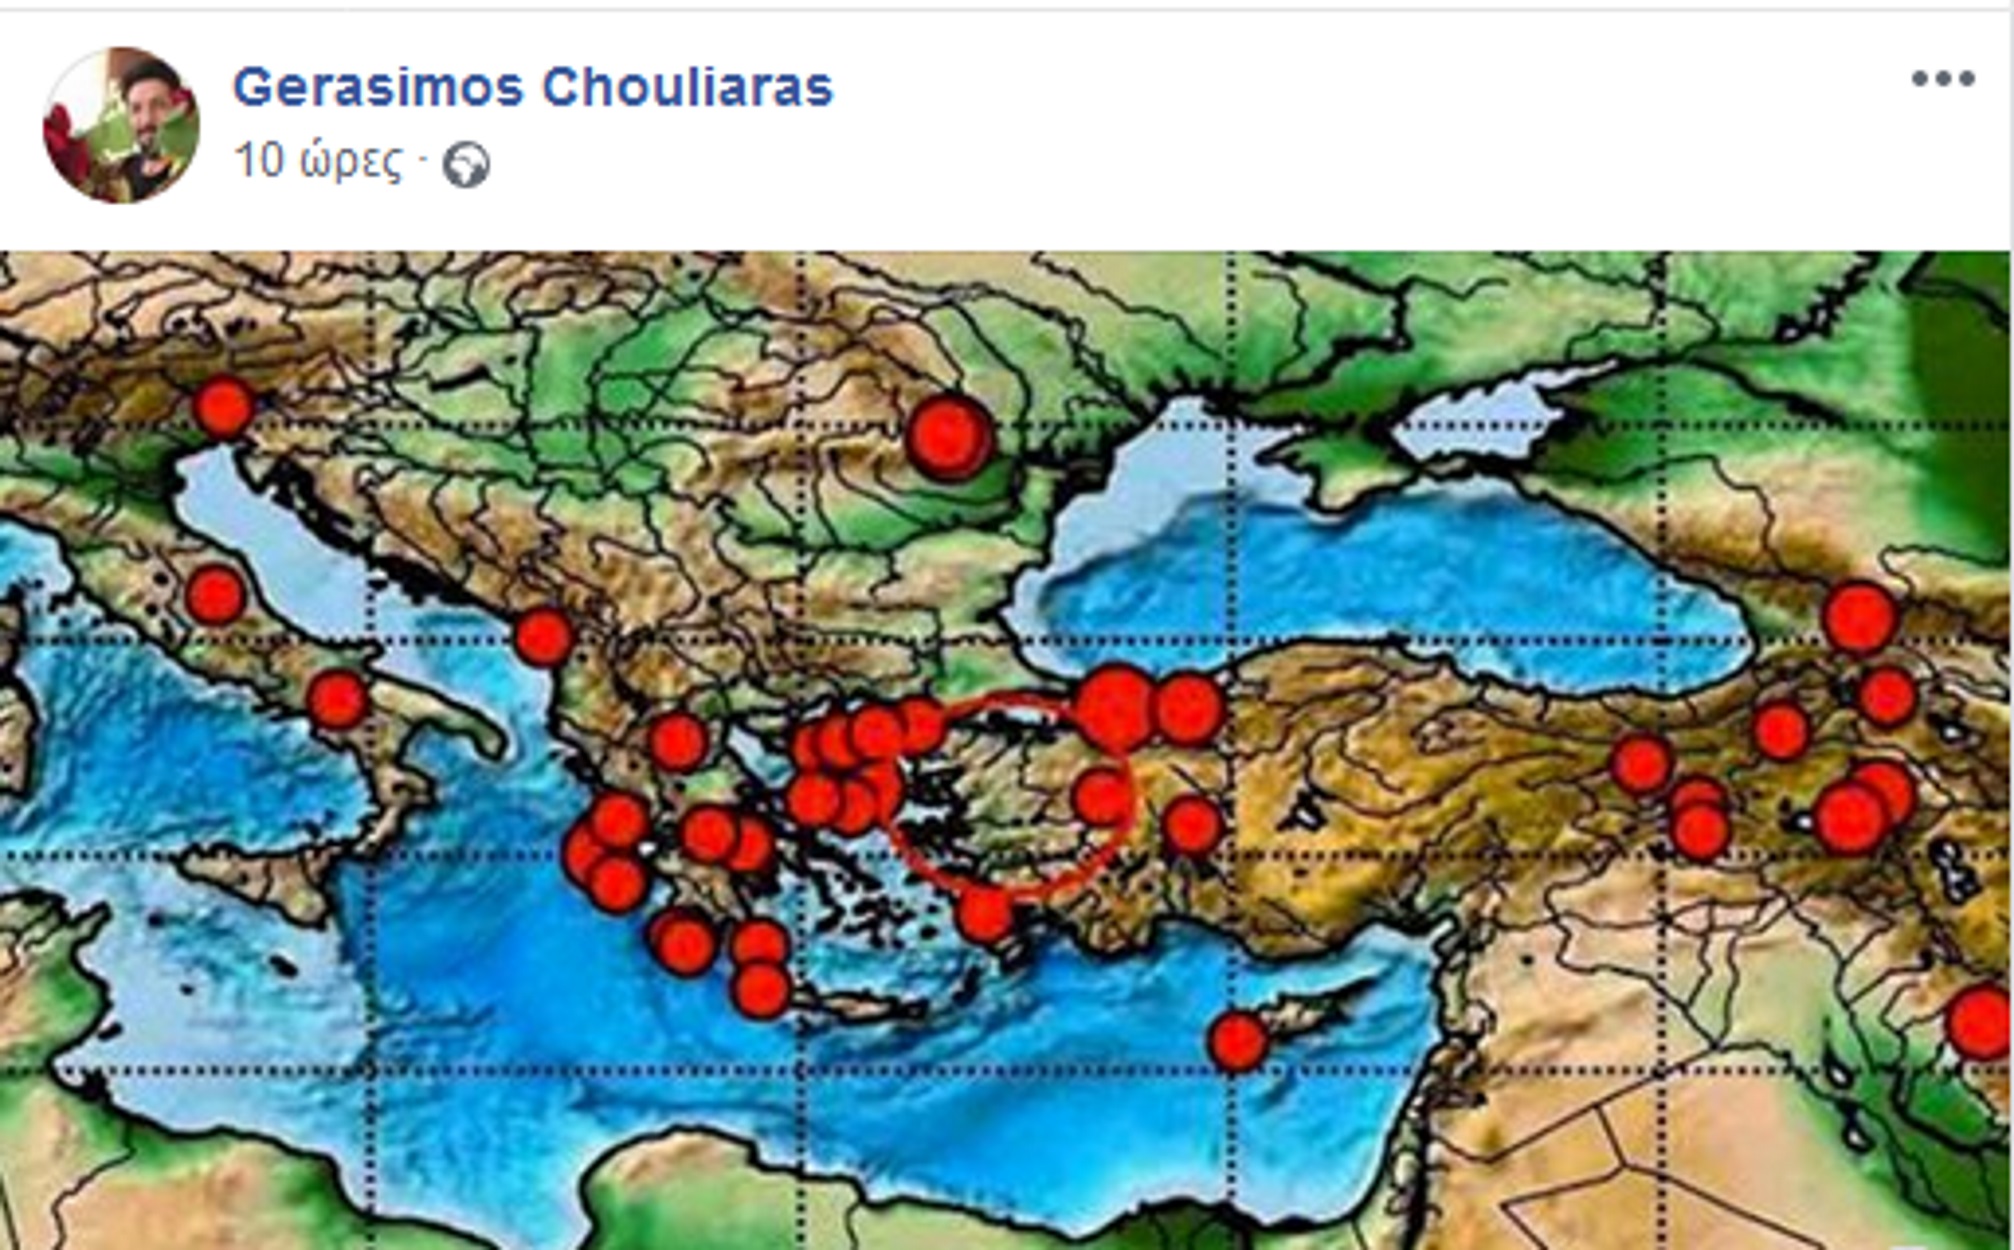 Σεισμός Τουρκία: Η προφητική ανάρτηση του Γεράσιμου Χουλιάρα